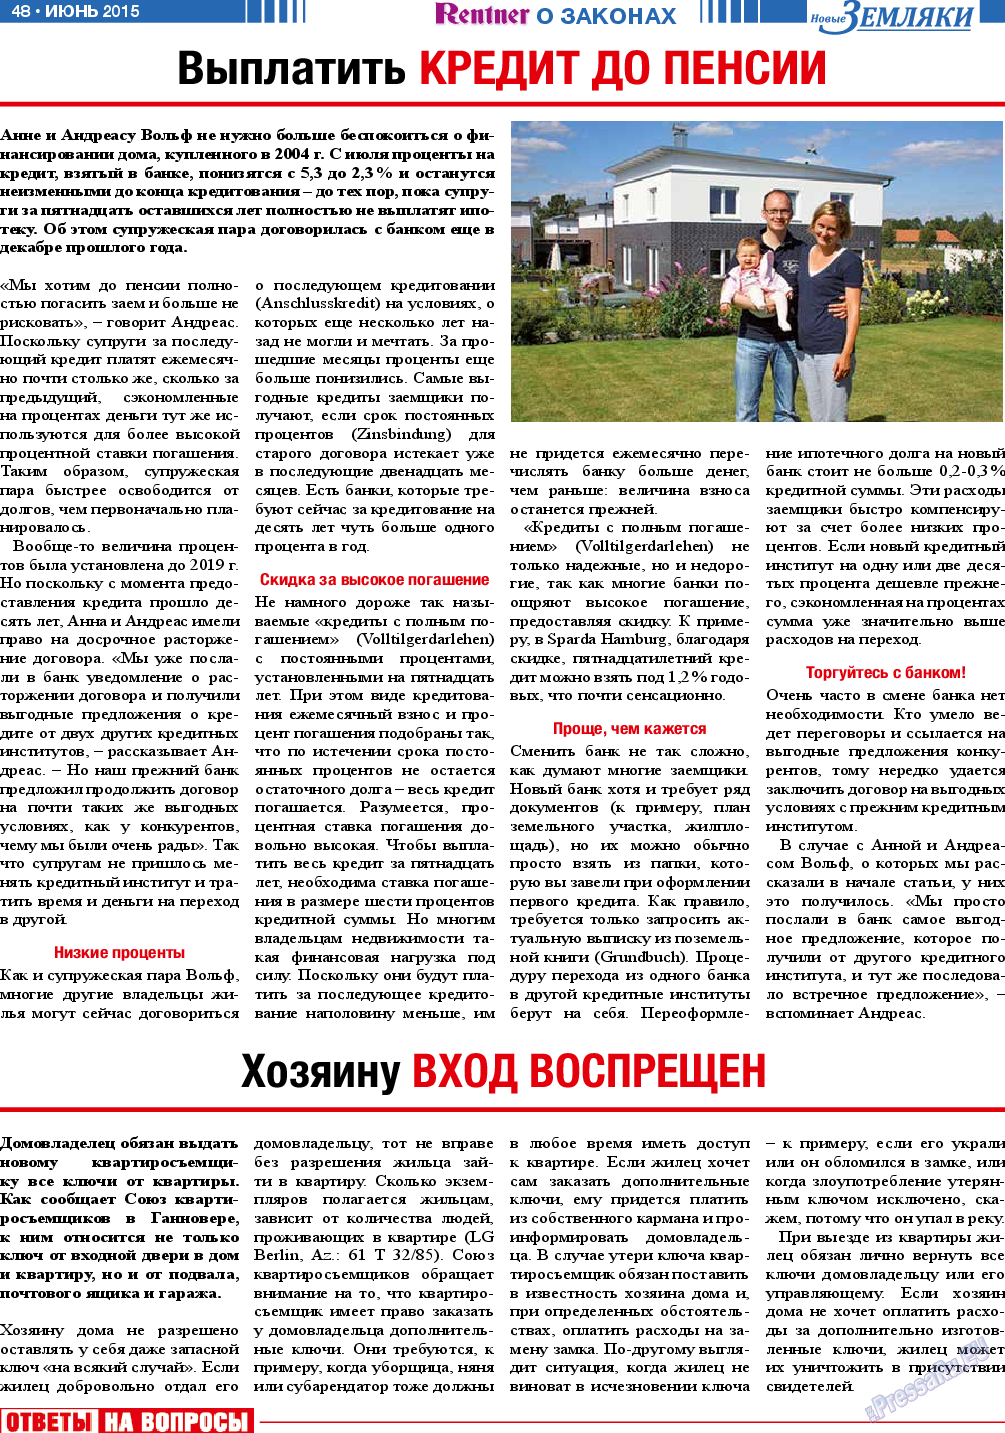 Новые Земляки (газета). 2015 год, номер 6, стр. 48